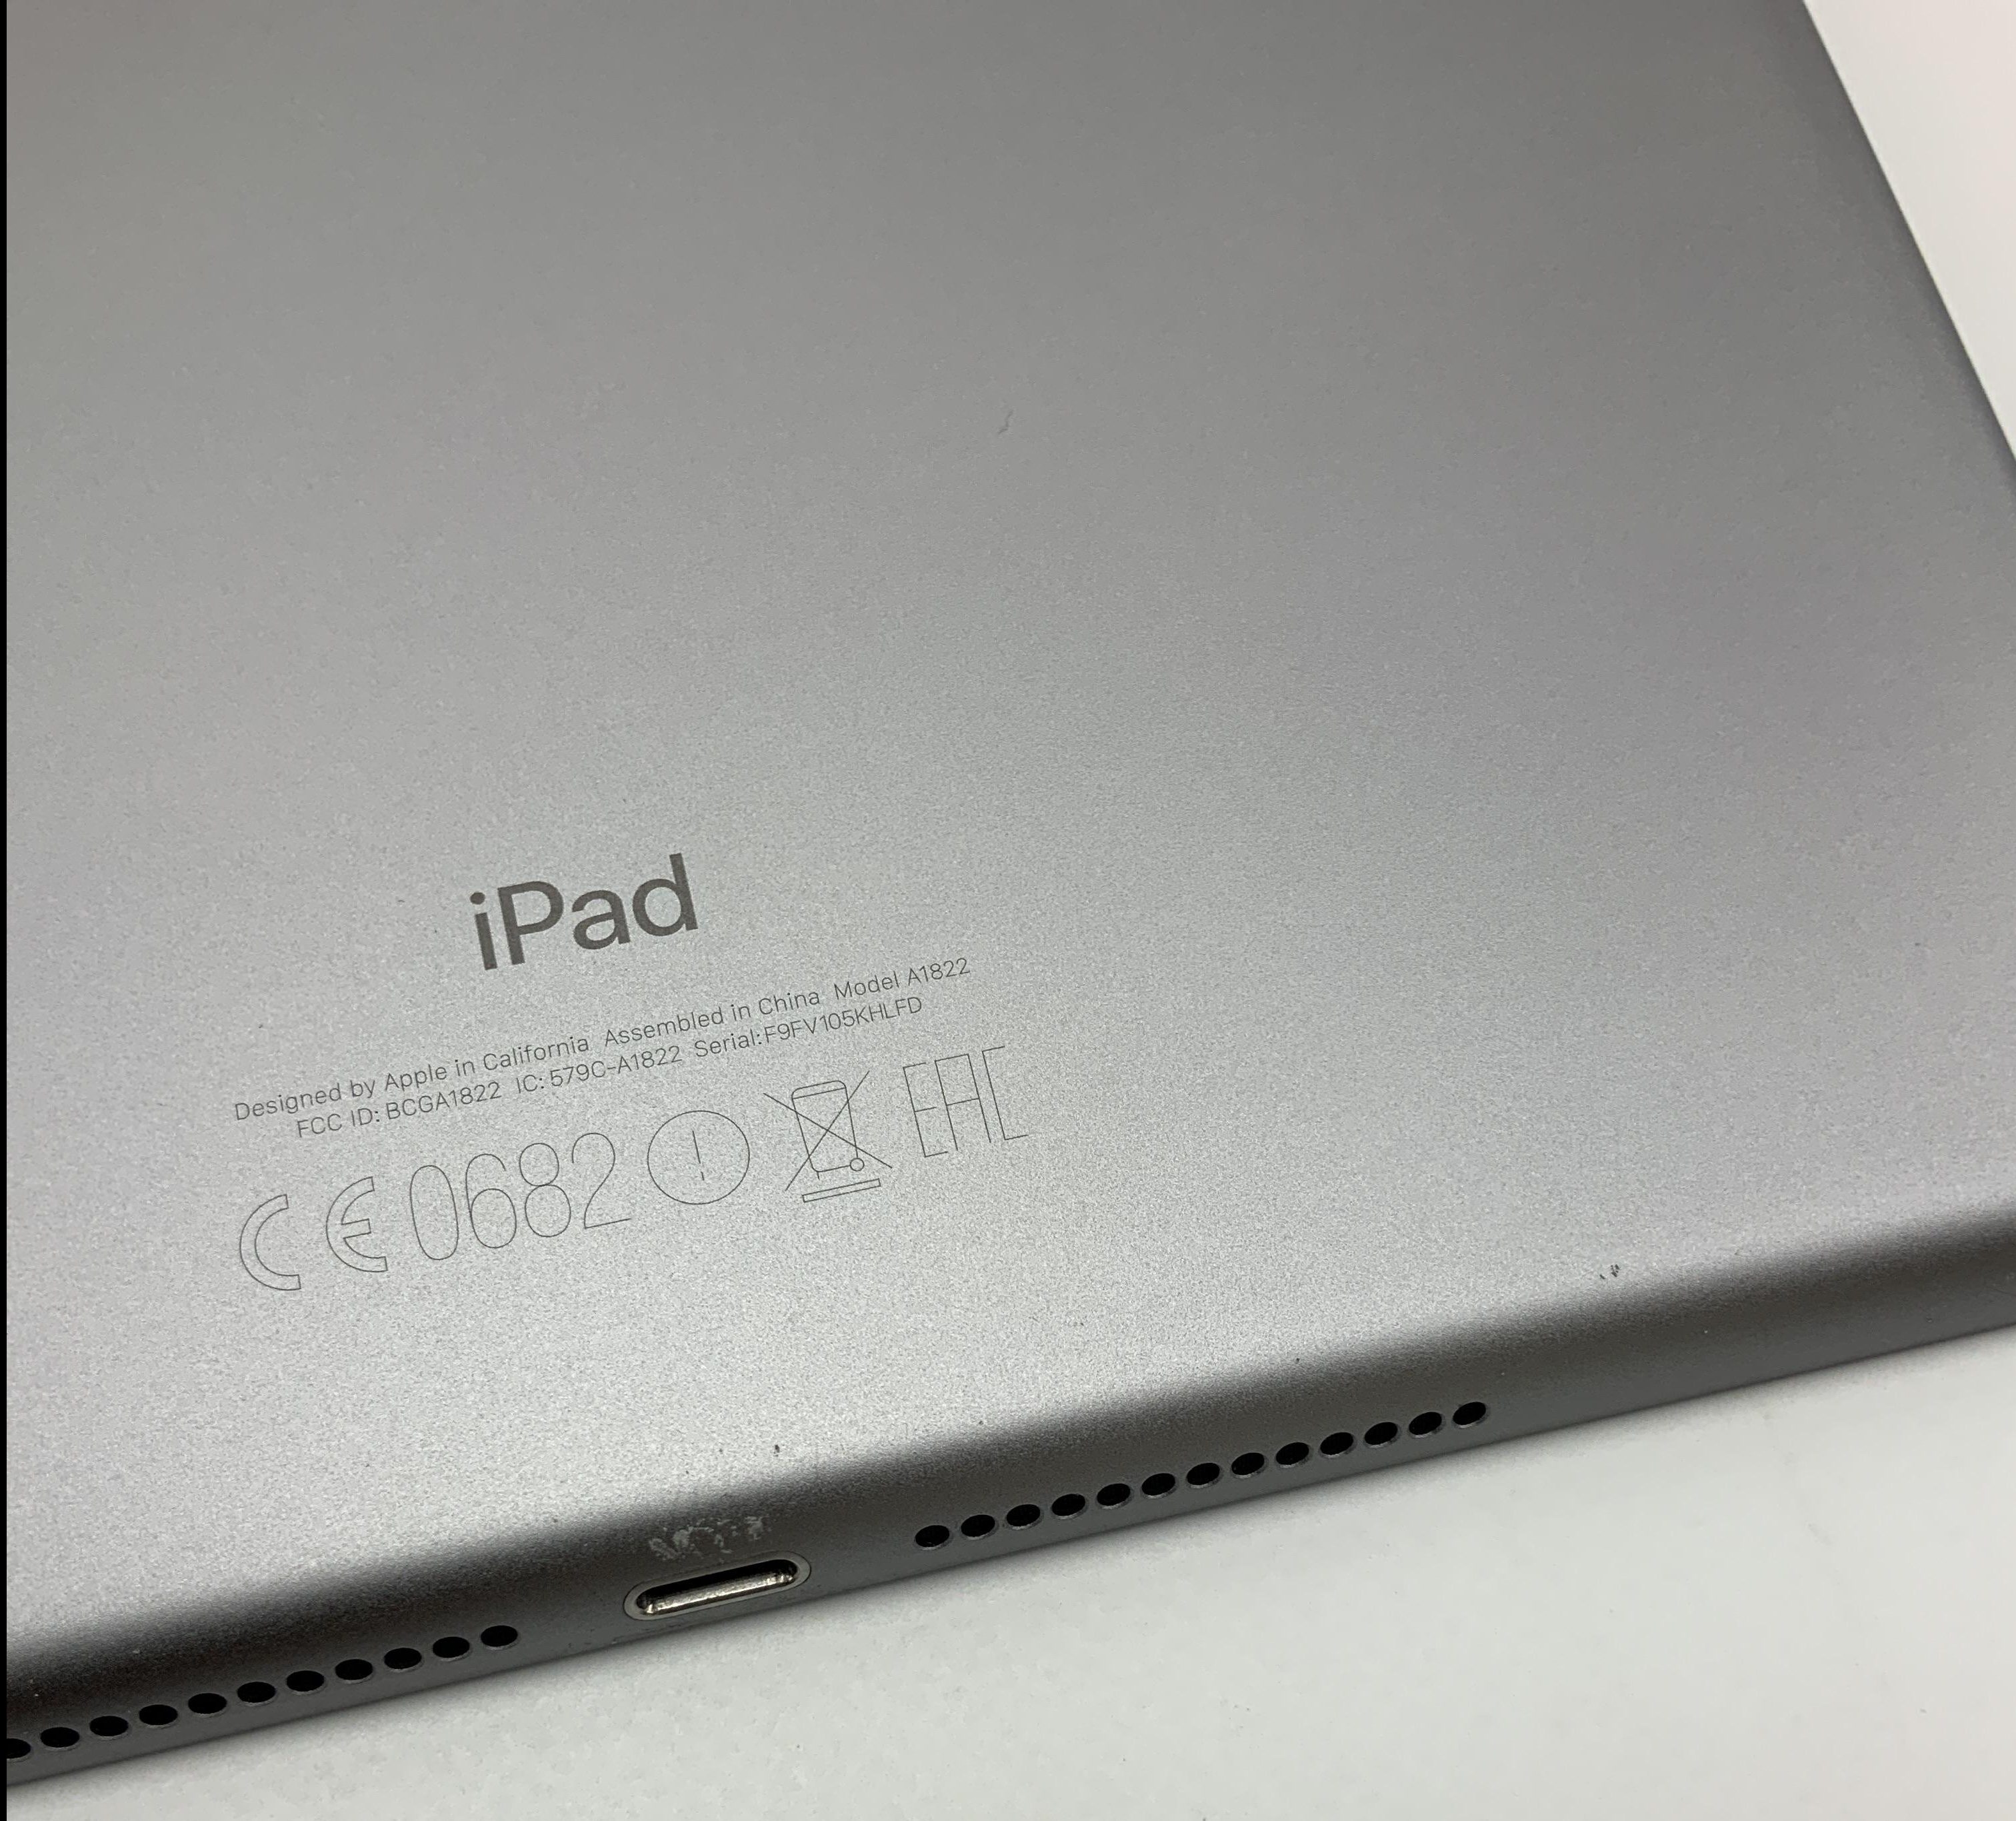 iPad 5 Wi-Fi 128GB, 128GB, Space Gray, immagine 4